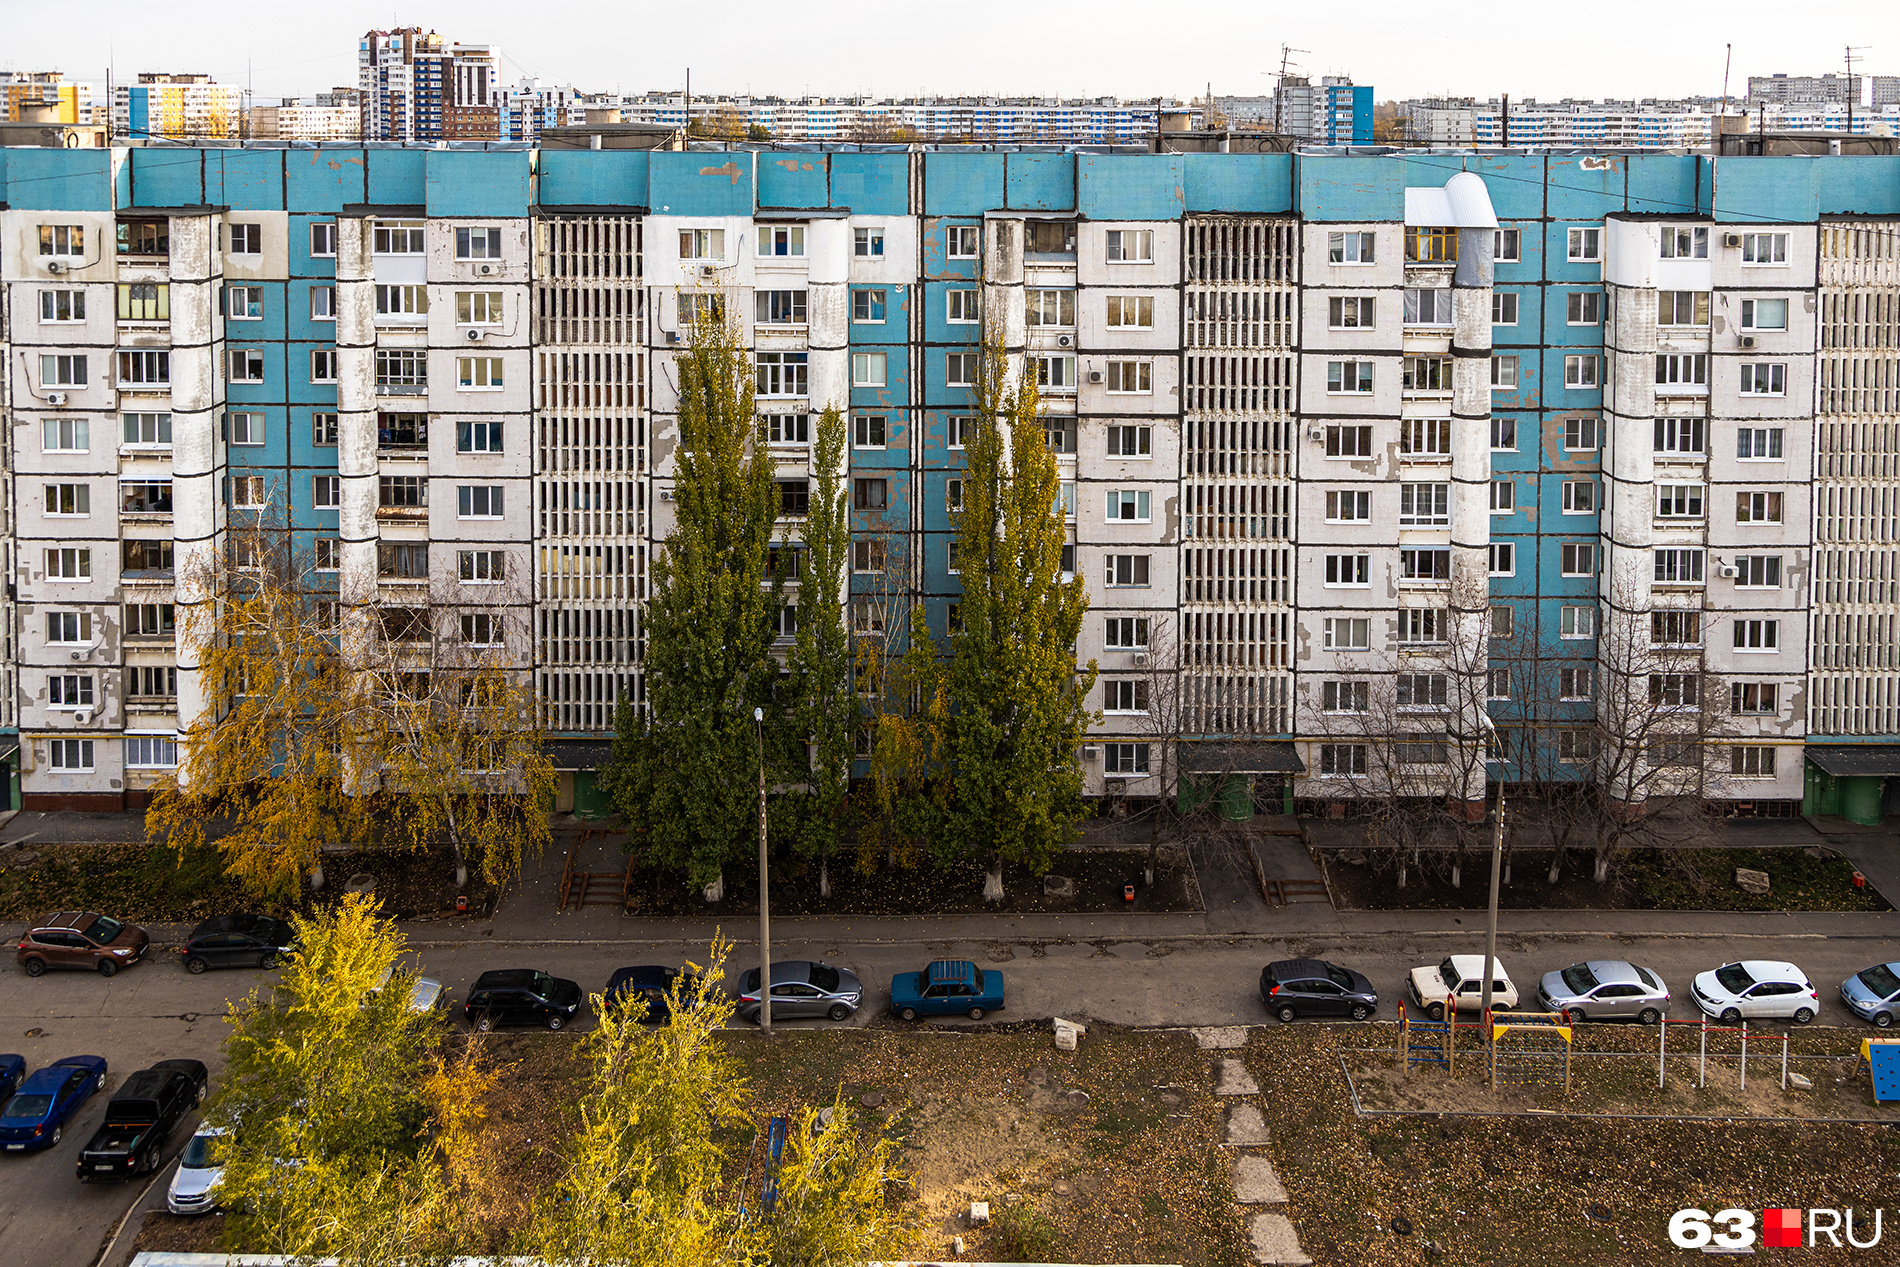 Цена на жилье в панельках 90-й серии начинается в среднем от 85 тысяч рублей за квадратный метр